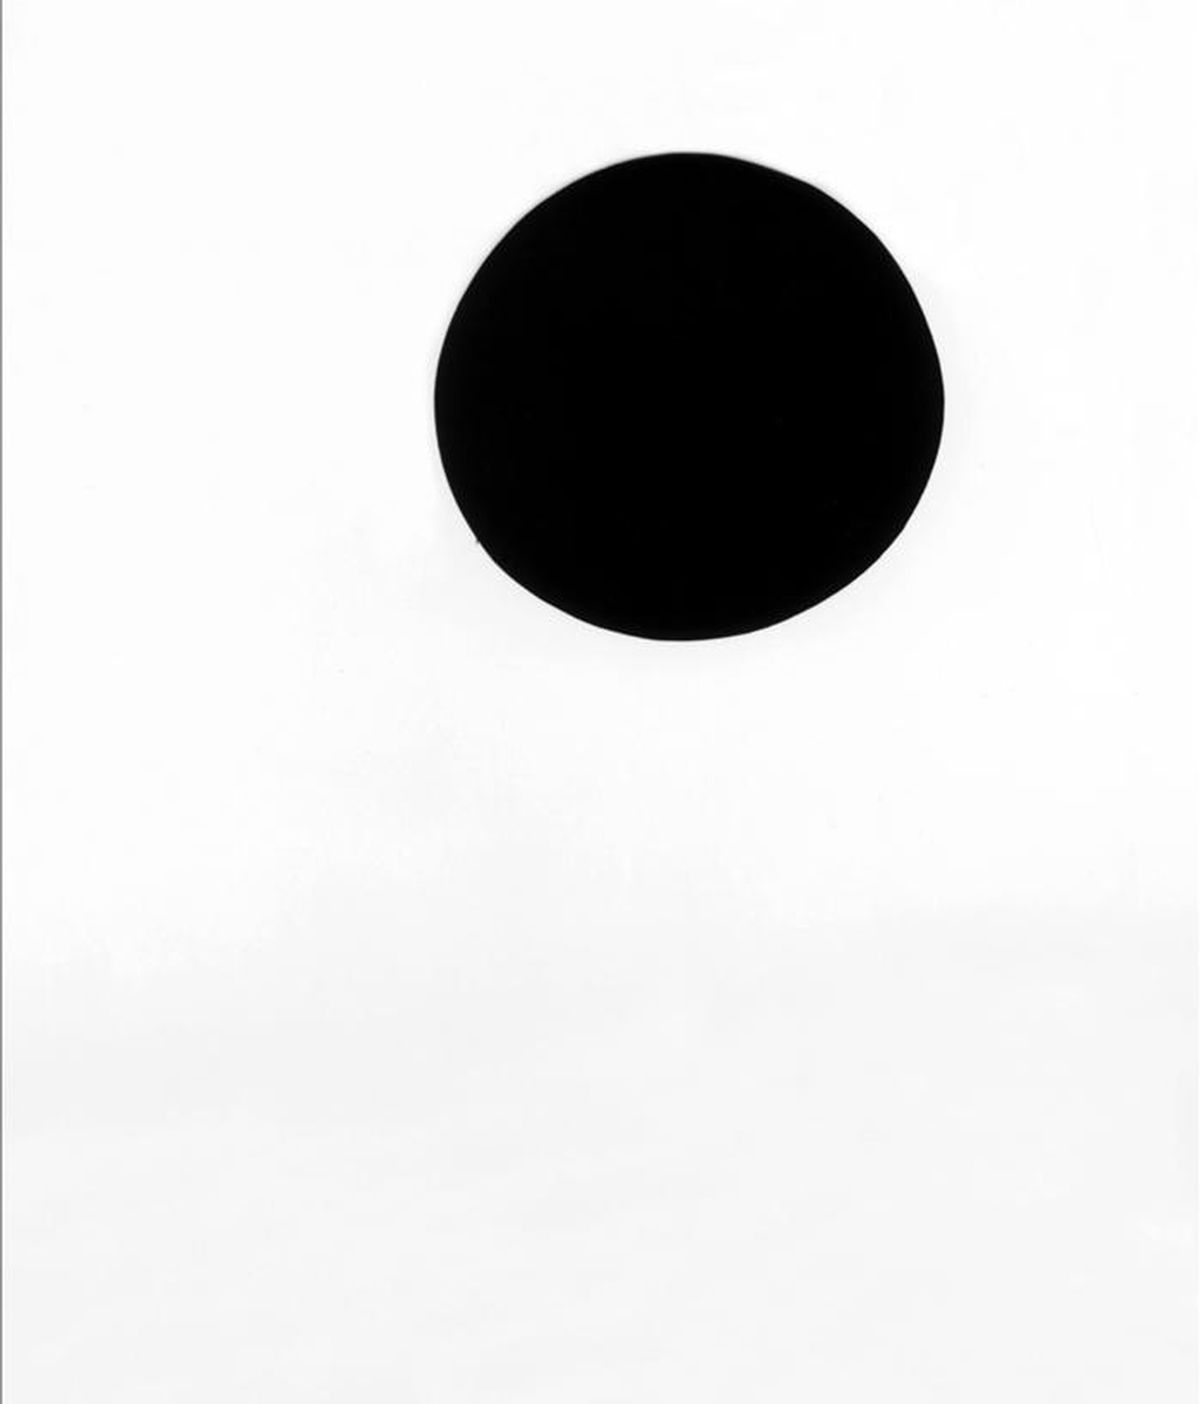 Foto cedida por el Museo Metropolitano de Nueva York de la obra titulada "Institutionalized Abstract Art" (Arte abstracto institucionalizado) realizada en 1976 por Richard Serra y que forma parte de la exposición retrospectiva "La Pintura de Richard Serra: Una retrospectiva". EFE